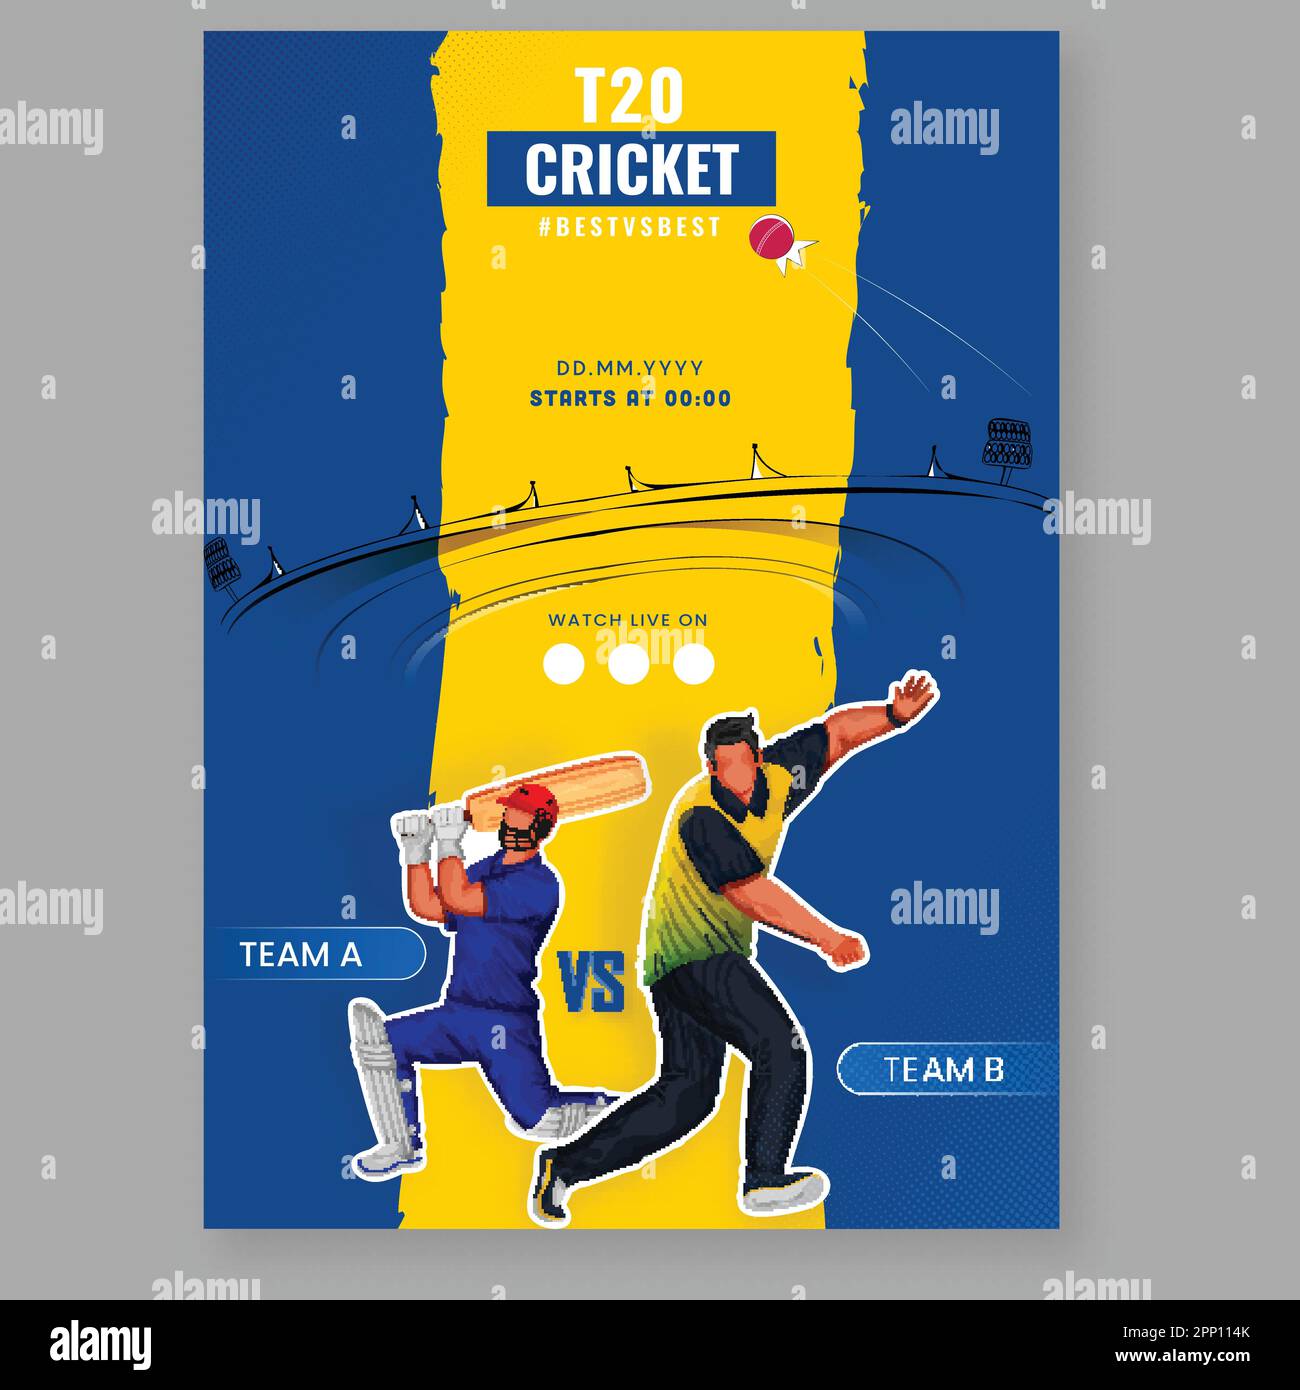 T20 Cricket Match Flyer Design mit Sticker Style gesichtsloser Schlagmann, Bowler-Spieler des teilnehmenden Teams A VS B auf Chrome Yellow und Blue Stadium Backg Stock Vektor